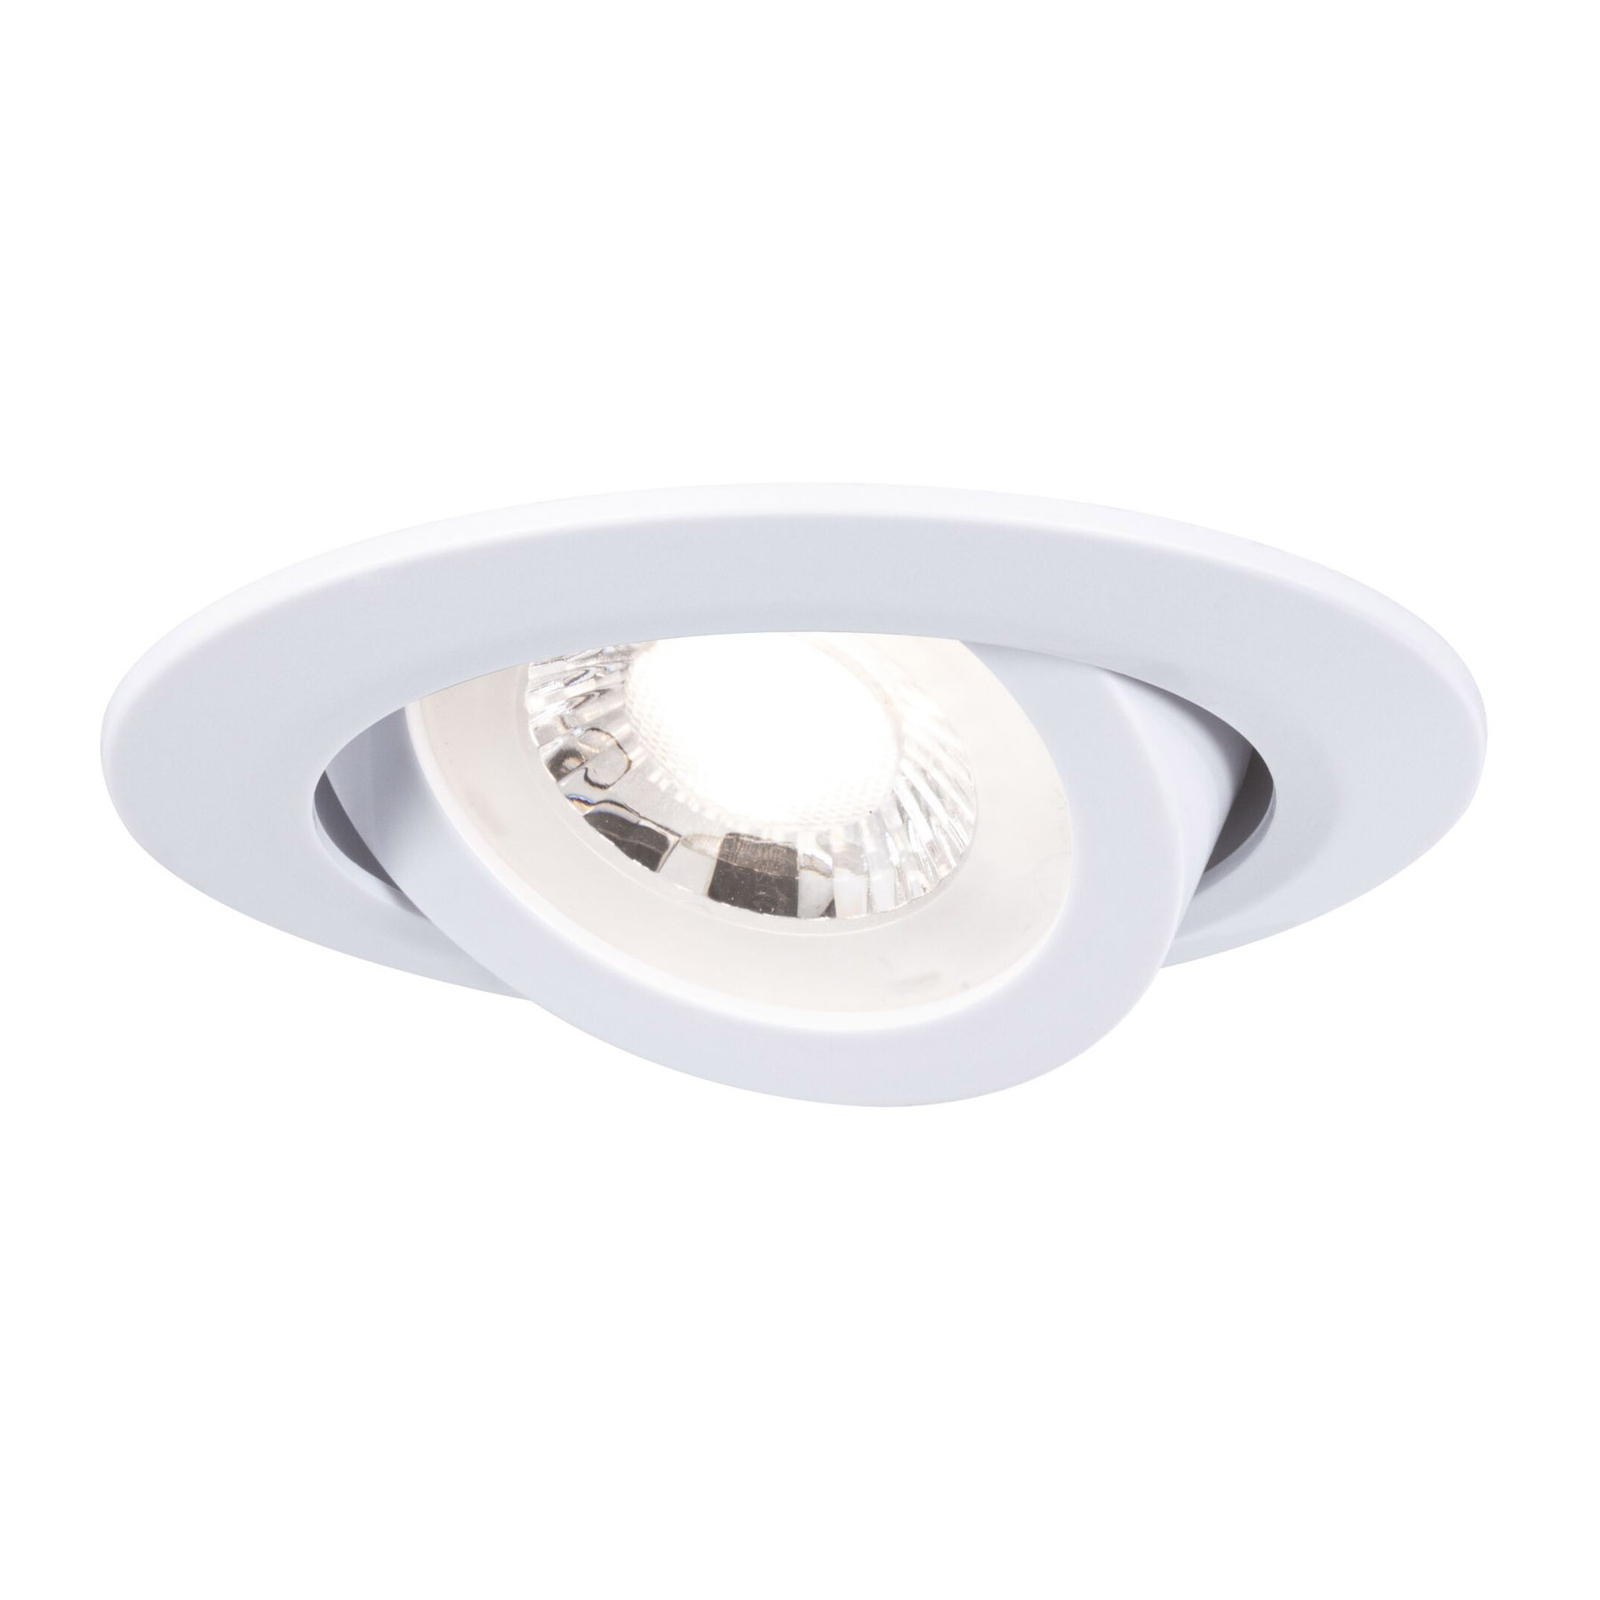 Paulmann lampe encastrée LED 93388, 3x4,8W, blanc